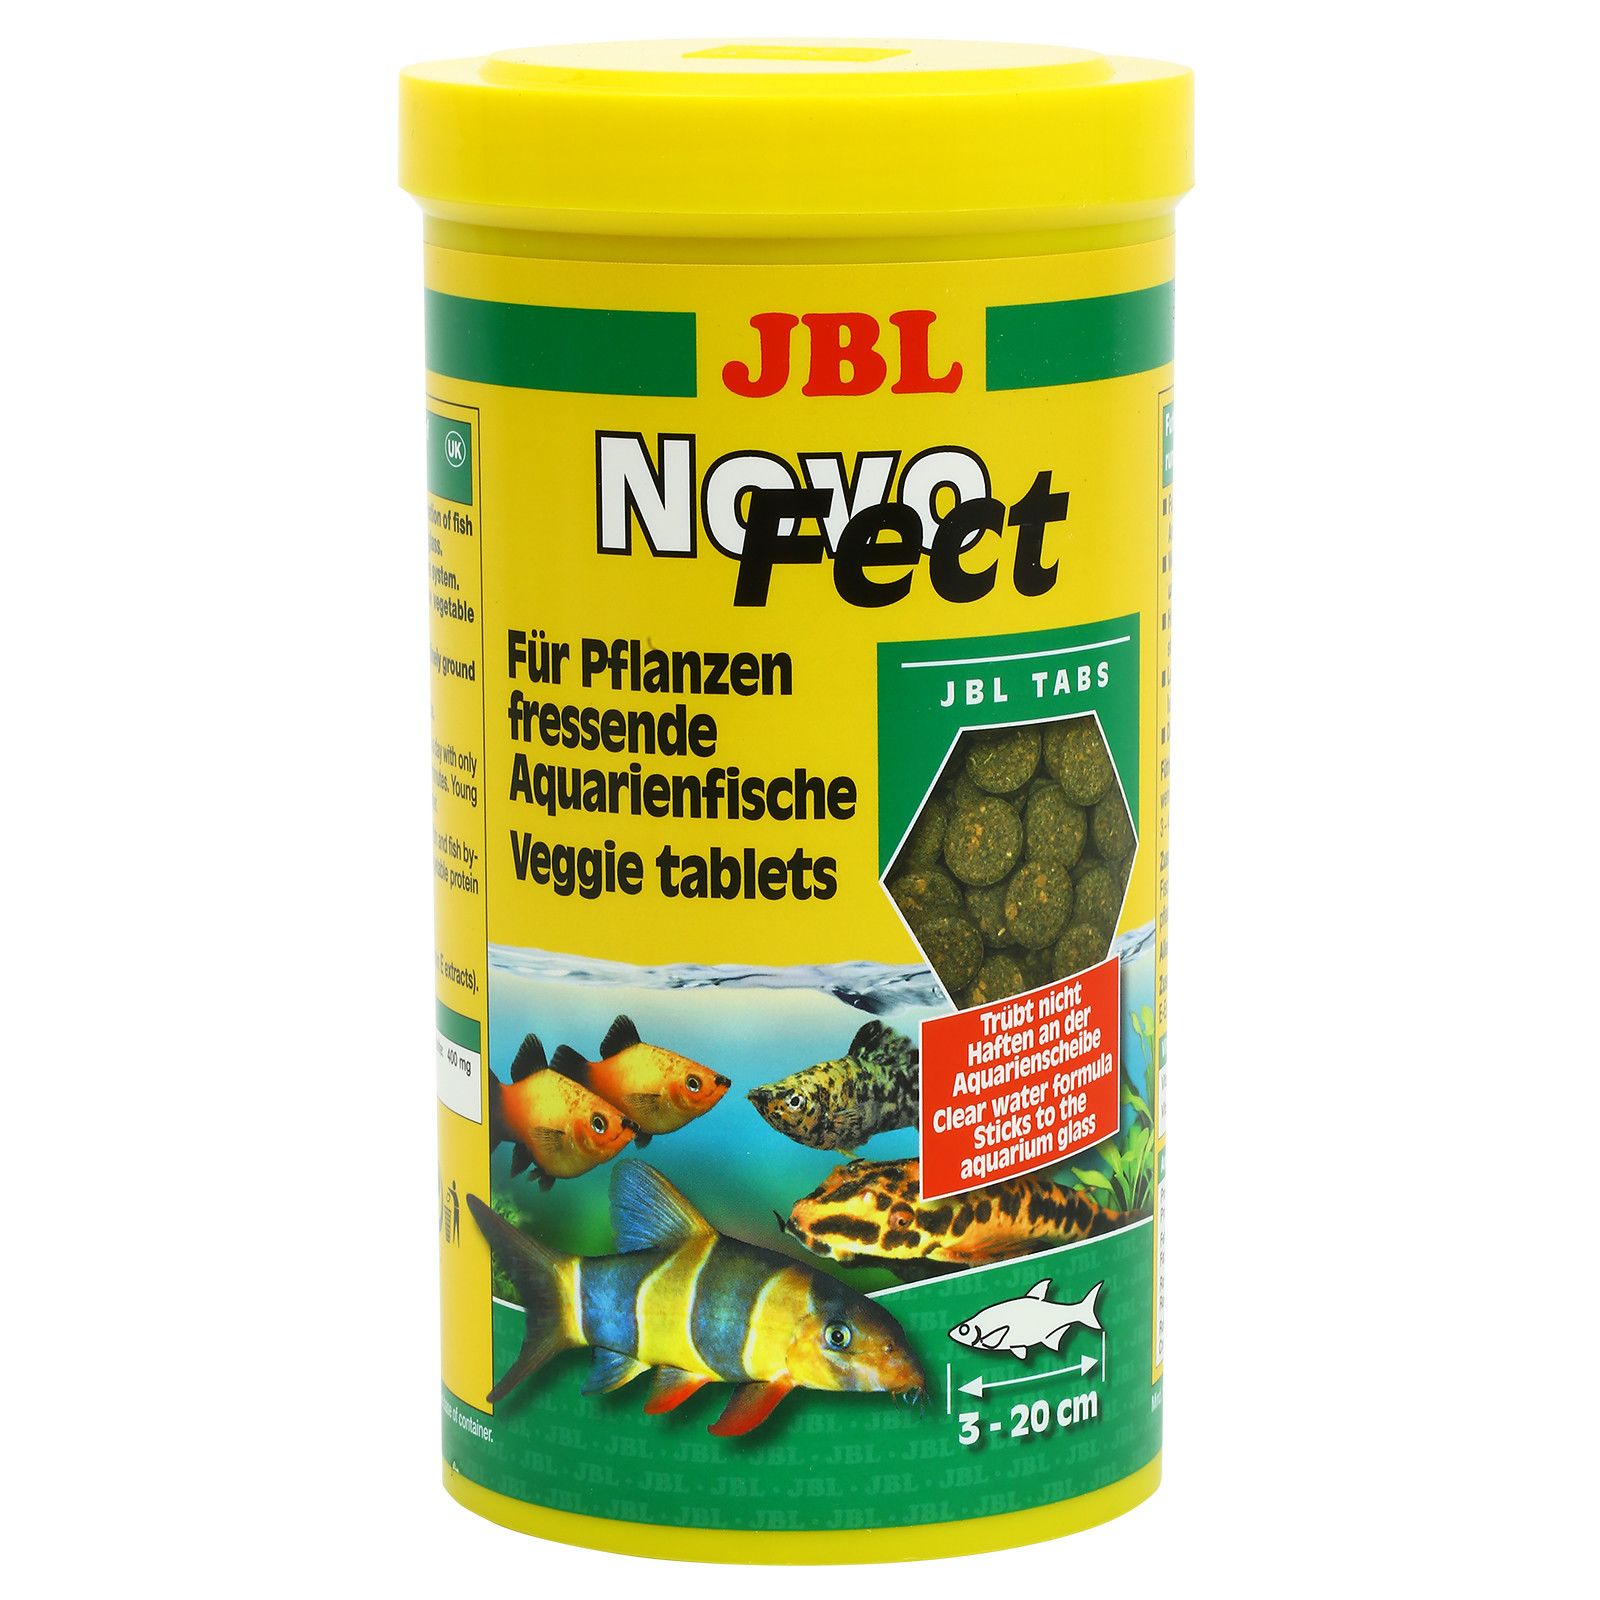 JBL  -  Novofect.